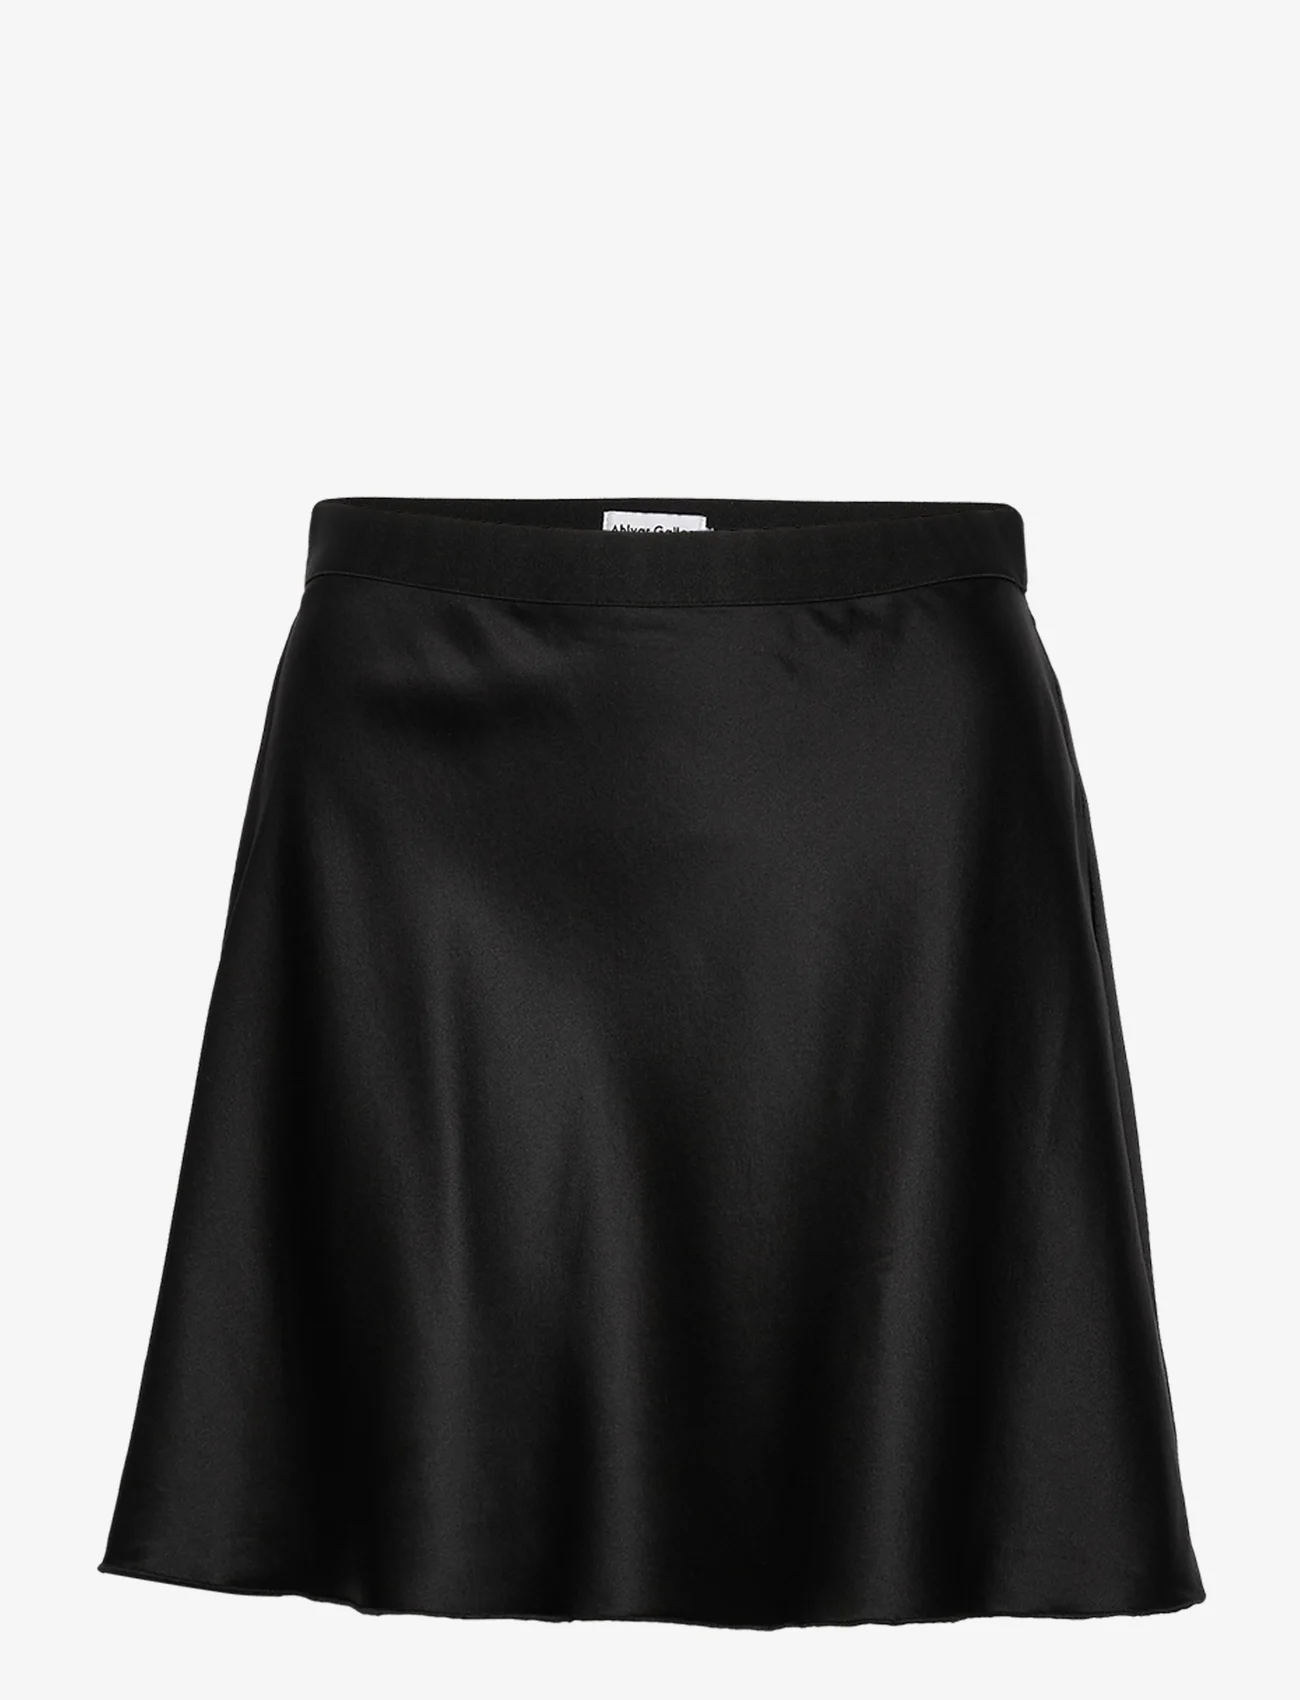 Ahlvar Gallery - Hana short skirt - korte skjørt - black - 1